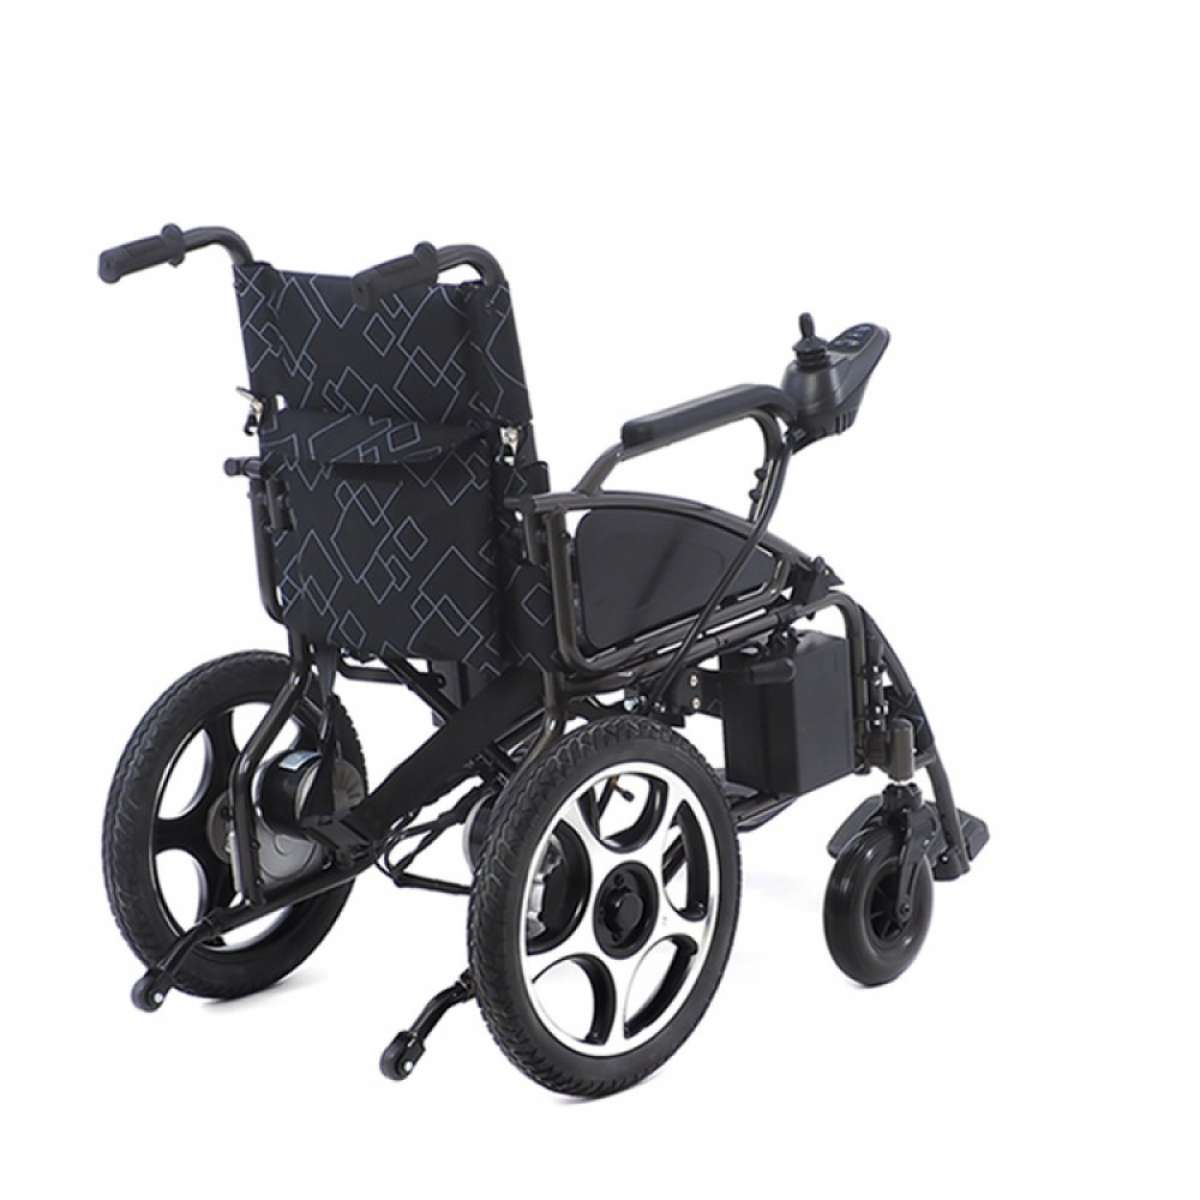 Электрическая кресло коляска MET START 610